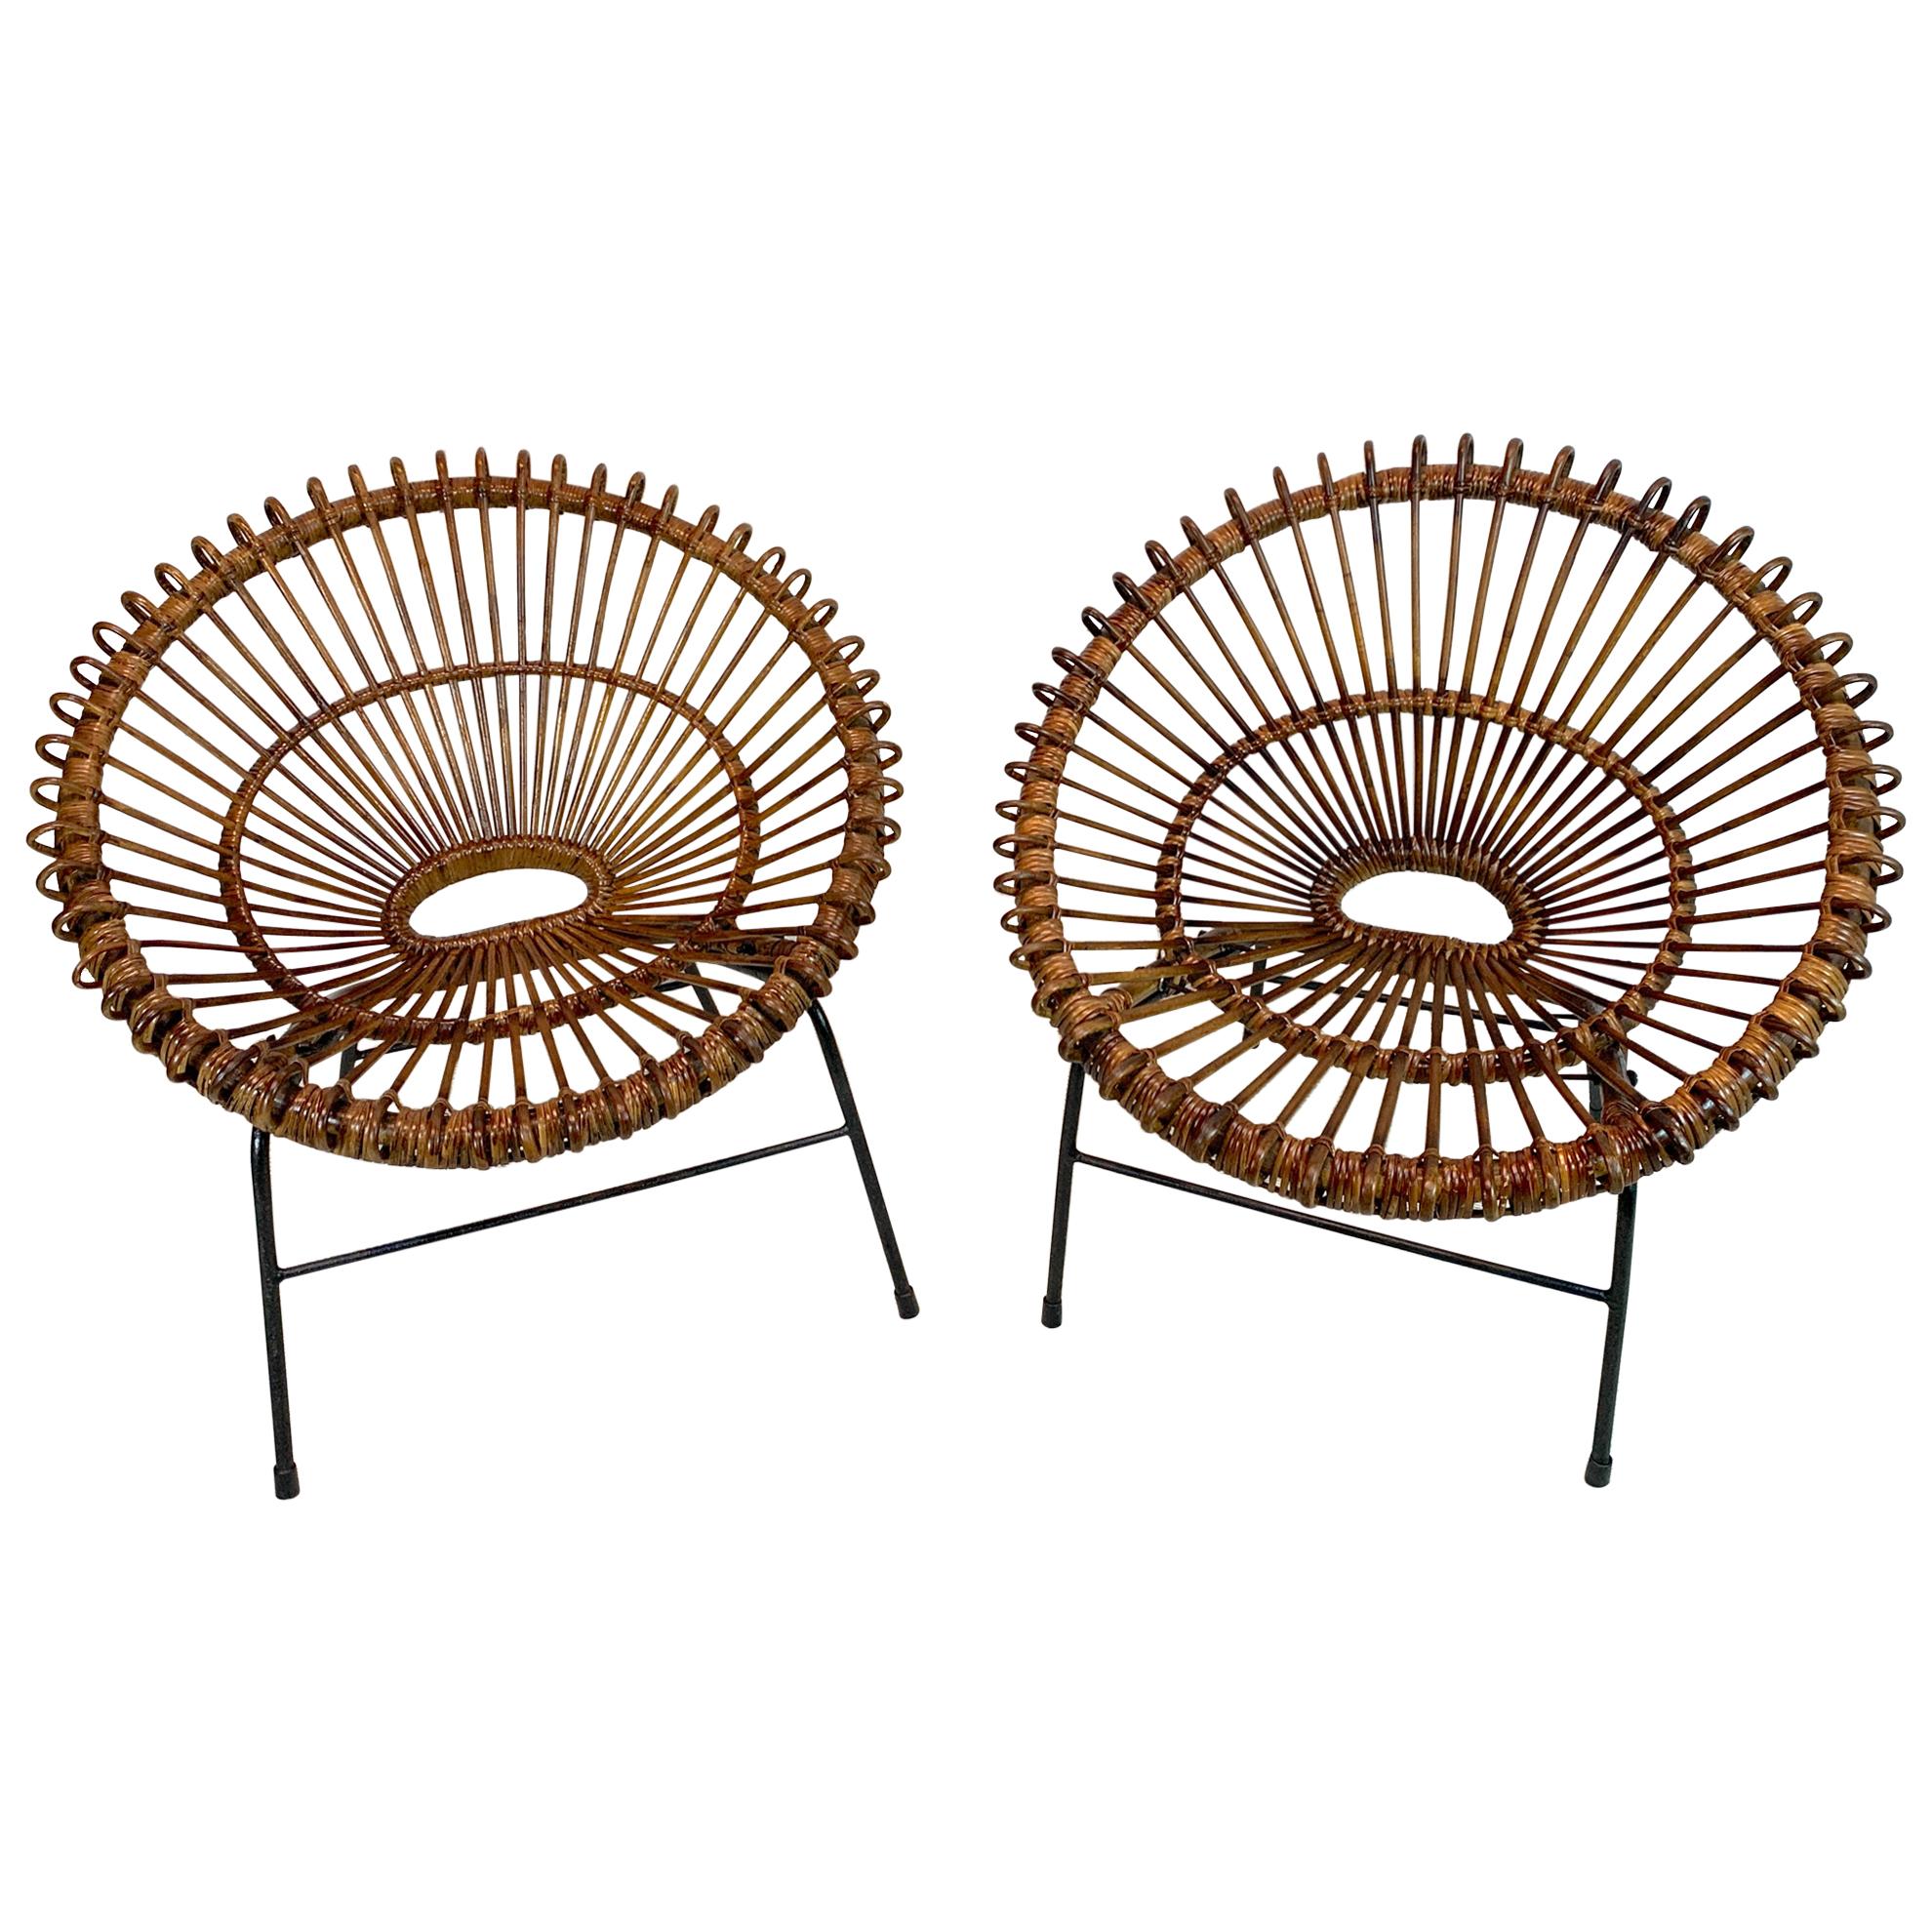 Pair of Rattan Hoop Chairs, Janine Abraham Dirk Jan Rol France, Restored